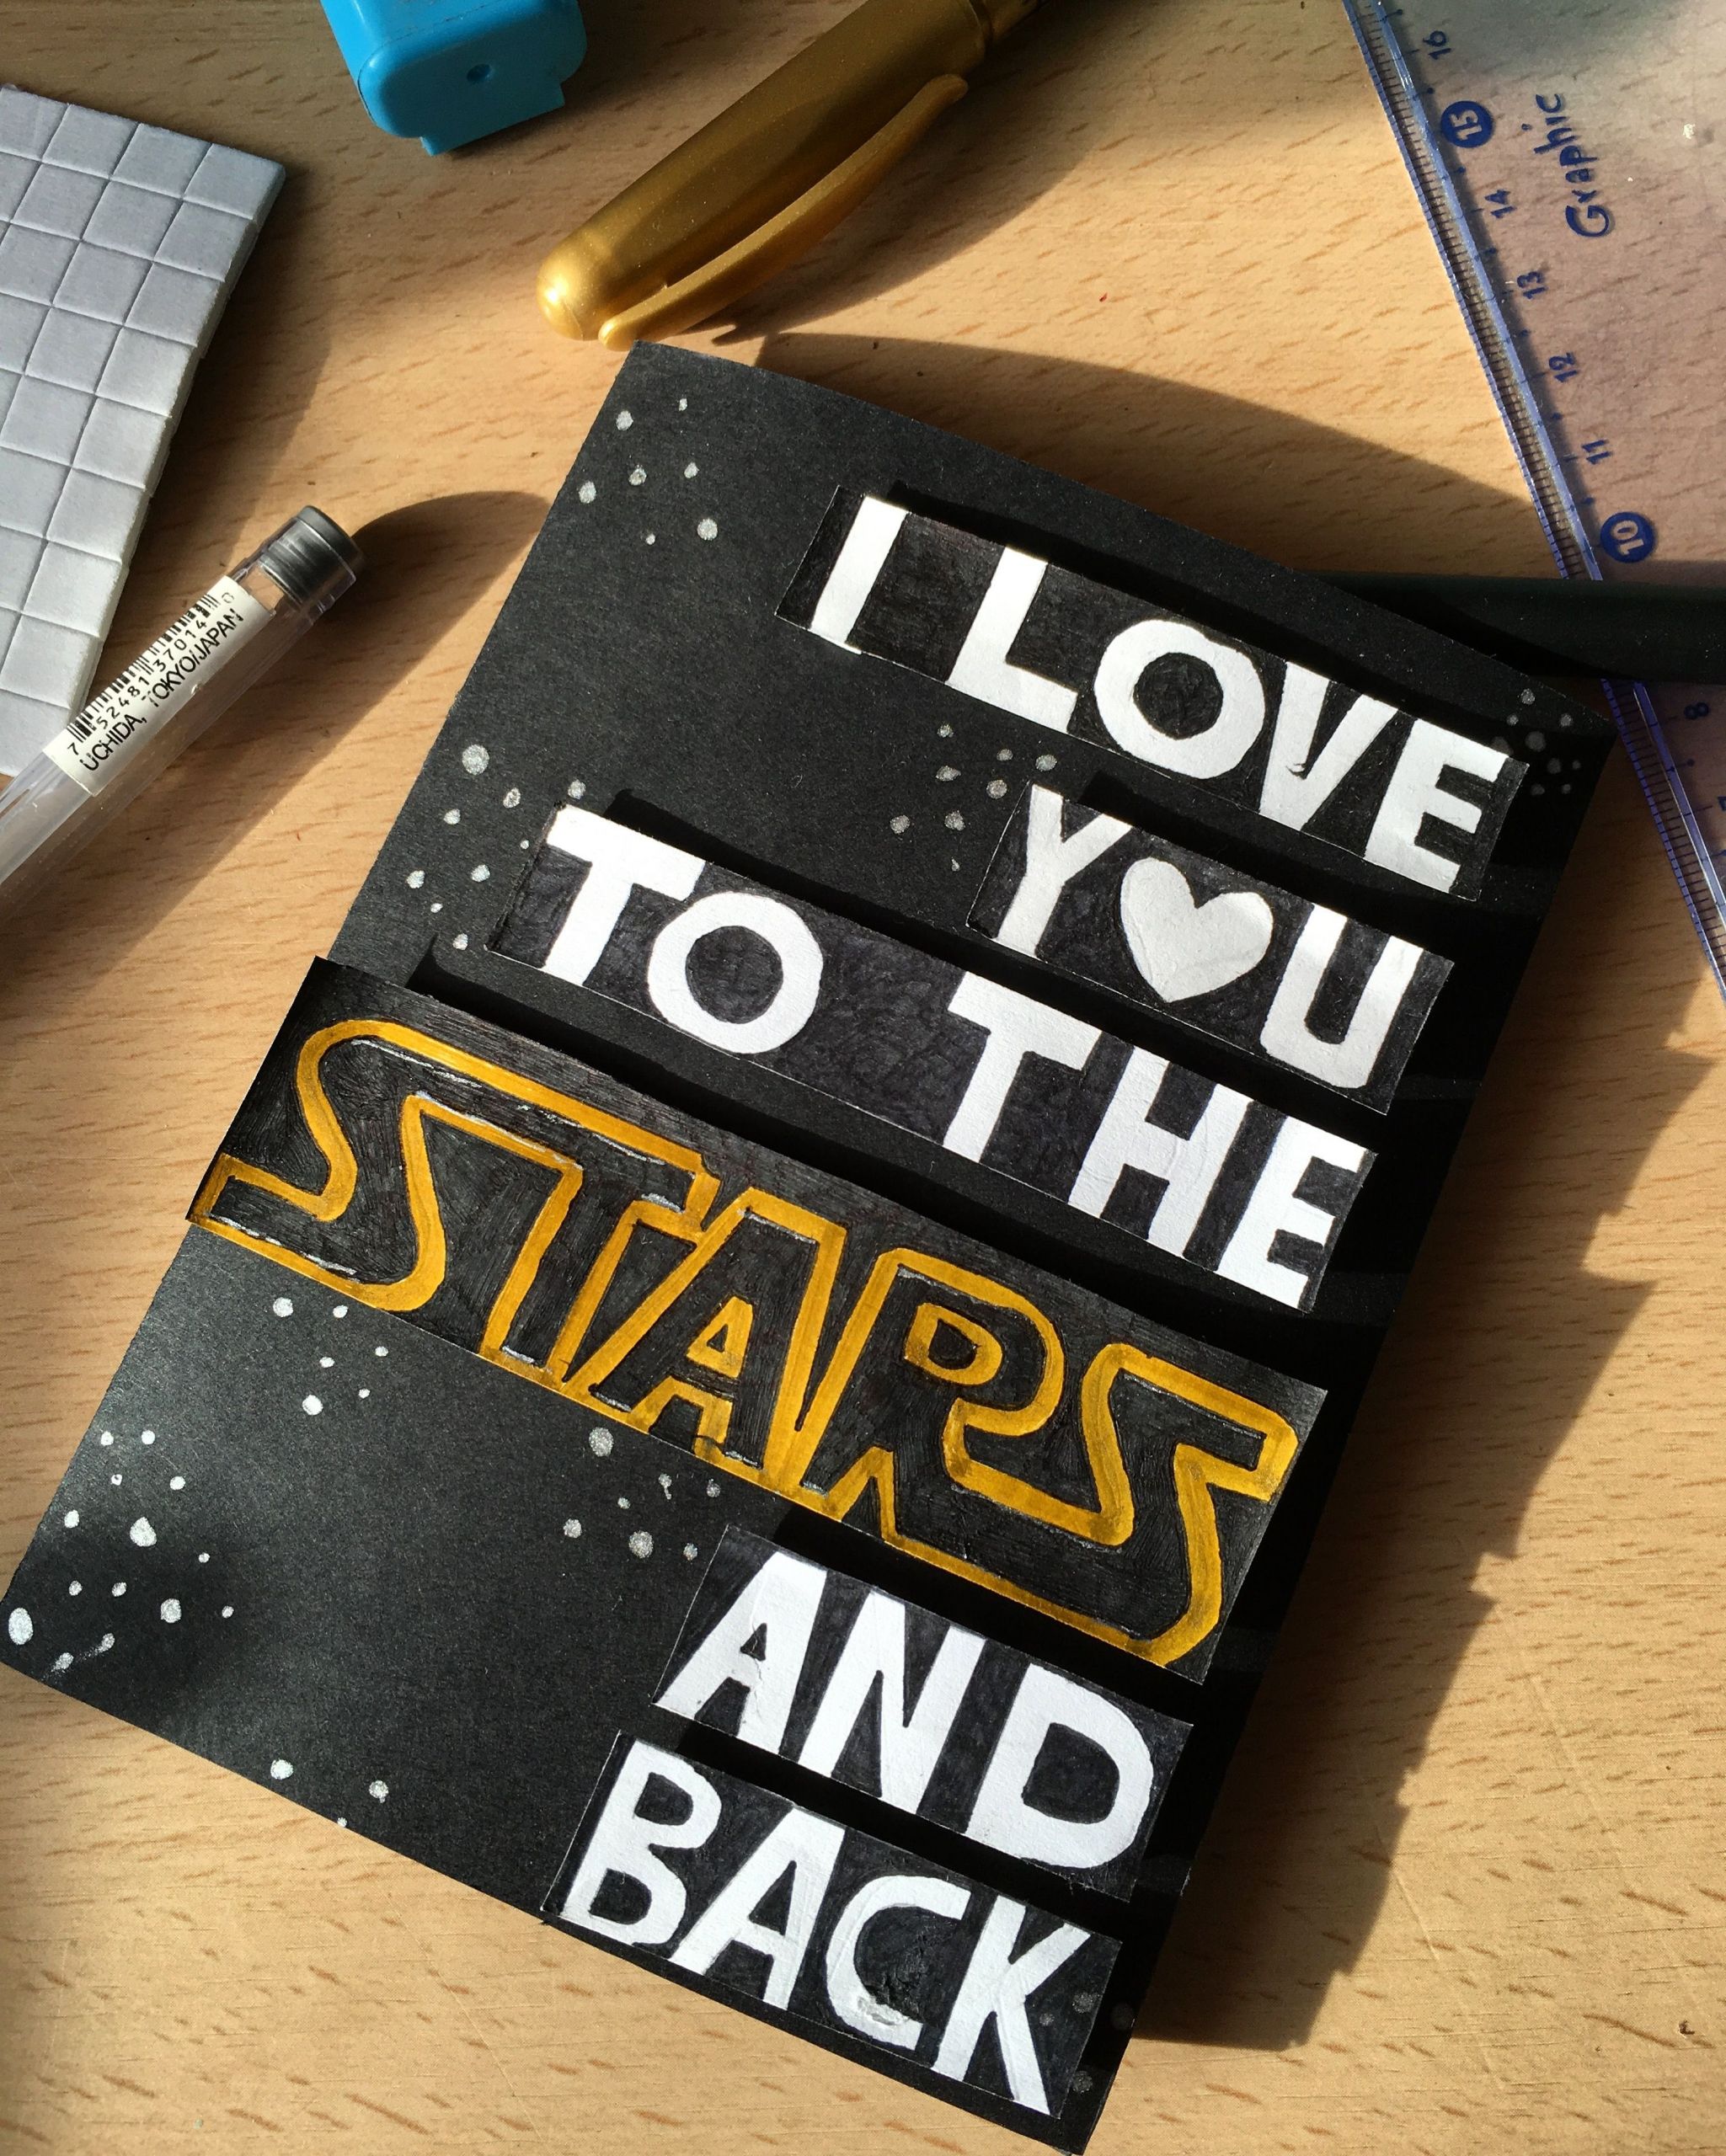 Star Wars Gift Ideas For Boyfriend
 Starwars